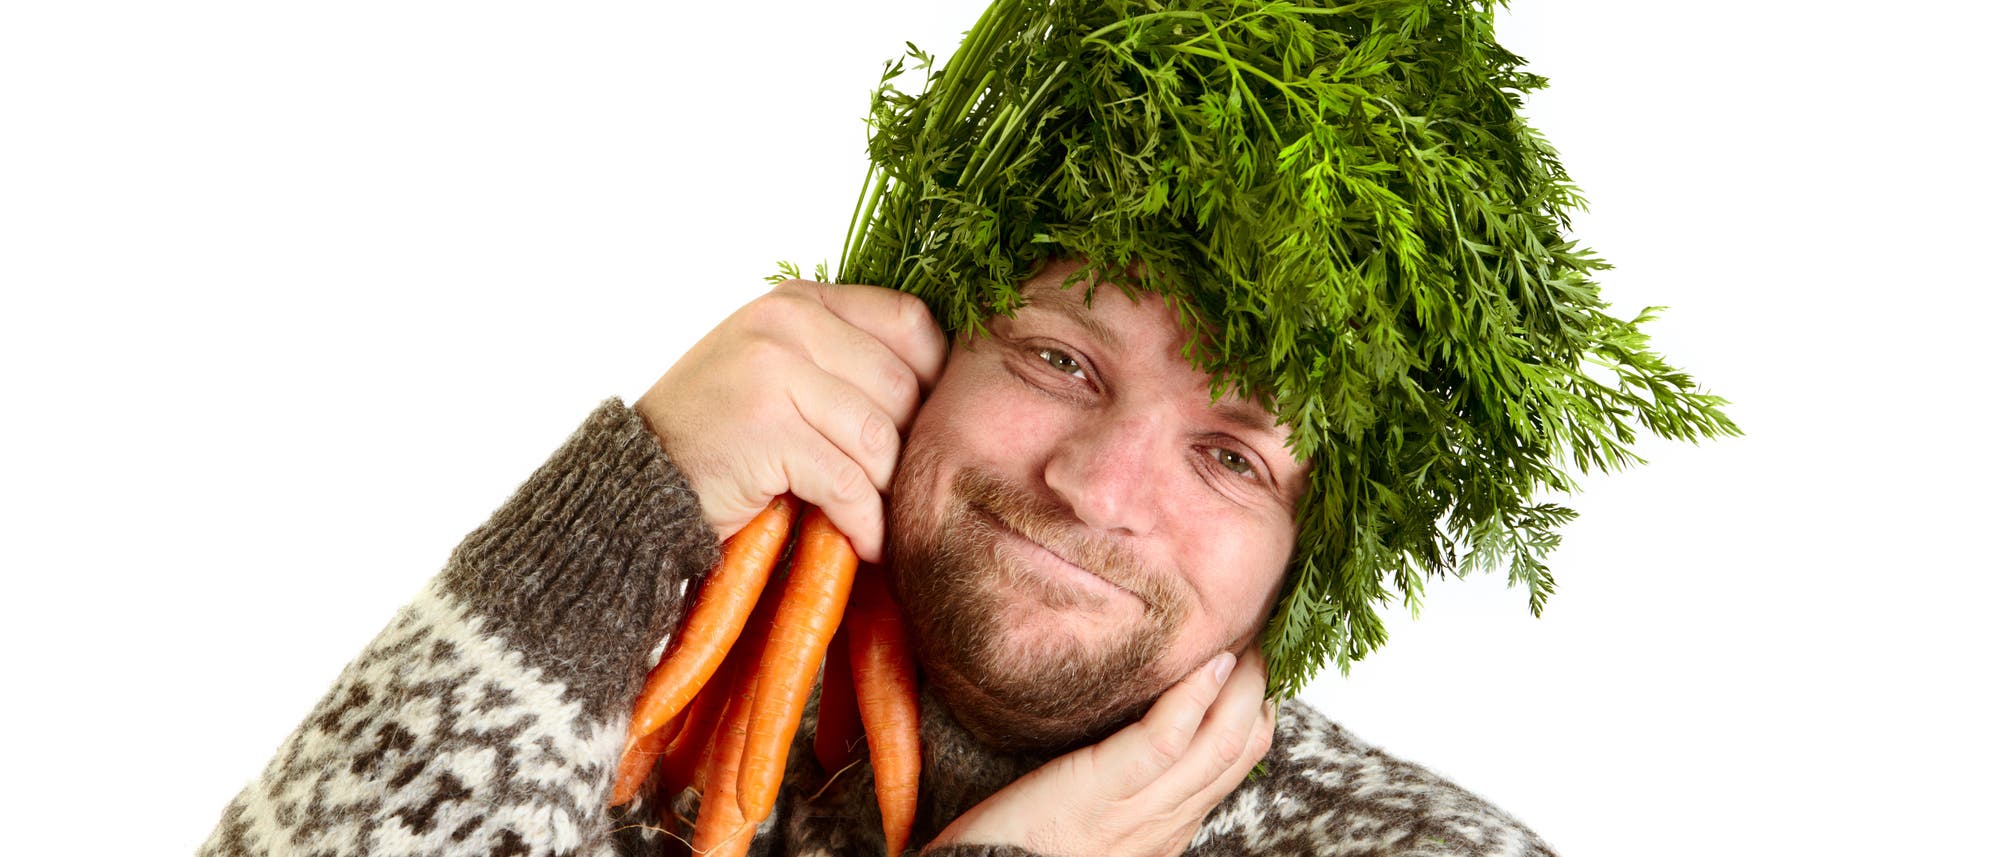 Ein diätaffiner Mann posiert mit Karotten